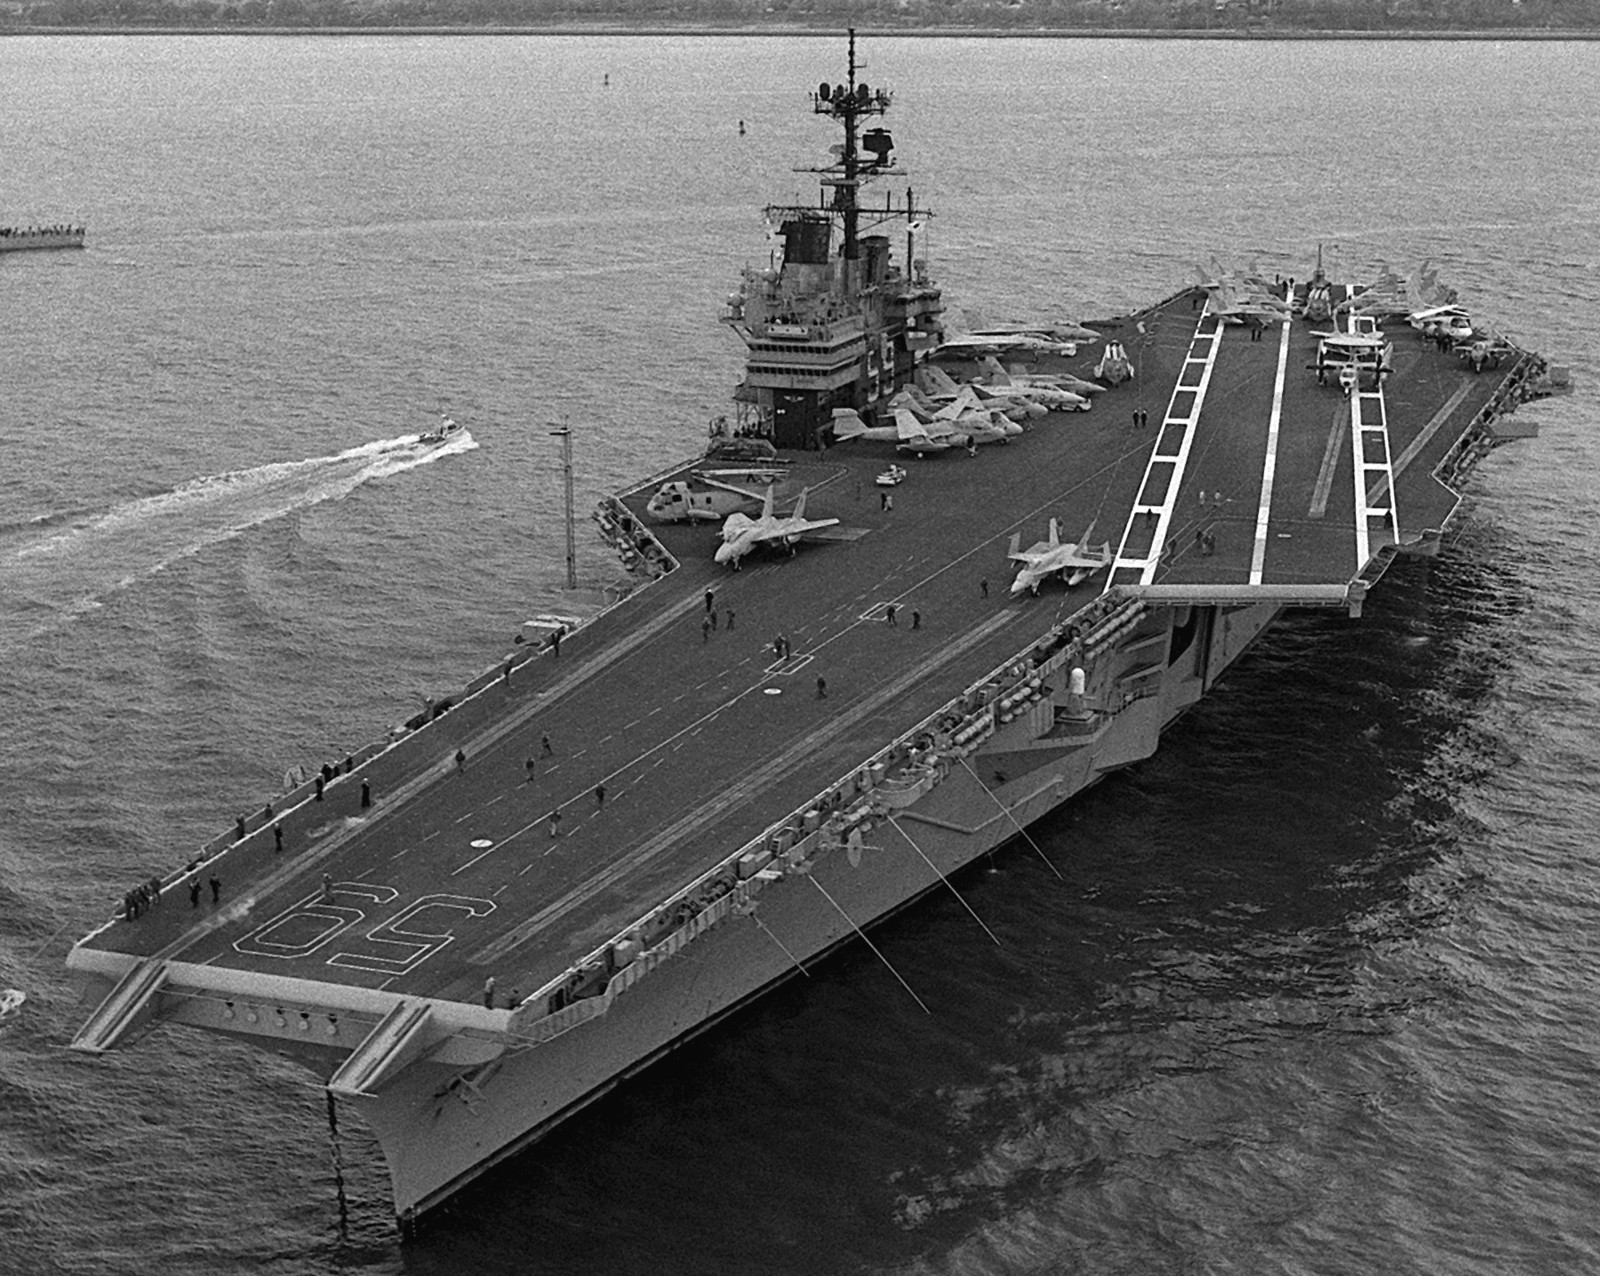 cv-59 uss forrestal aircraft carrier us navy fleet week new york 1989 99